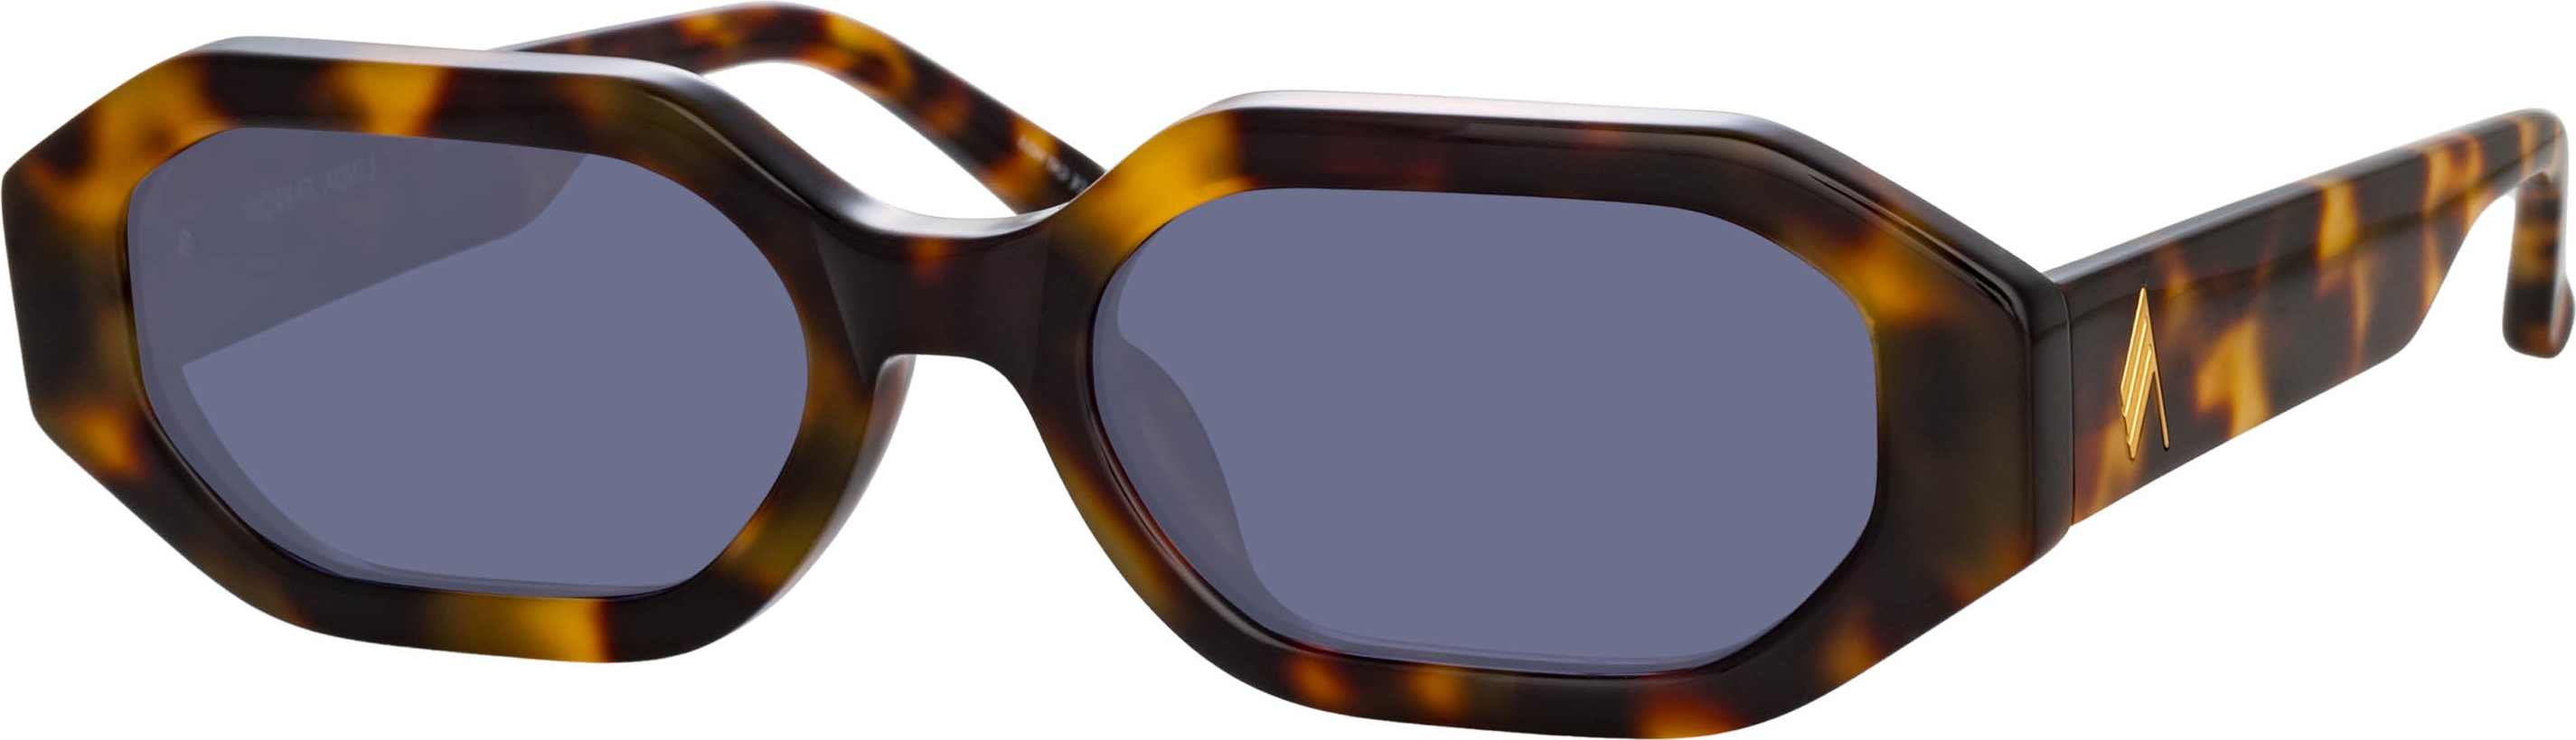 Color_ATTICO14C2SUN - The Attico Irene Angular Sunglasses in Tortoiseshell